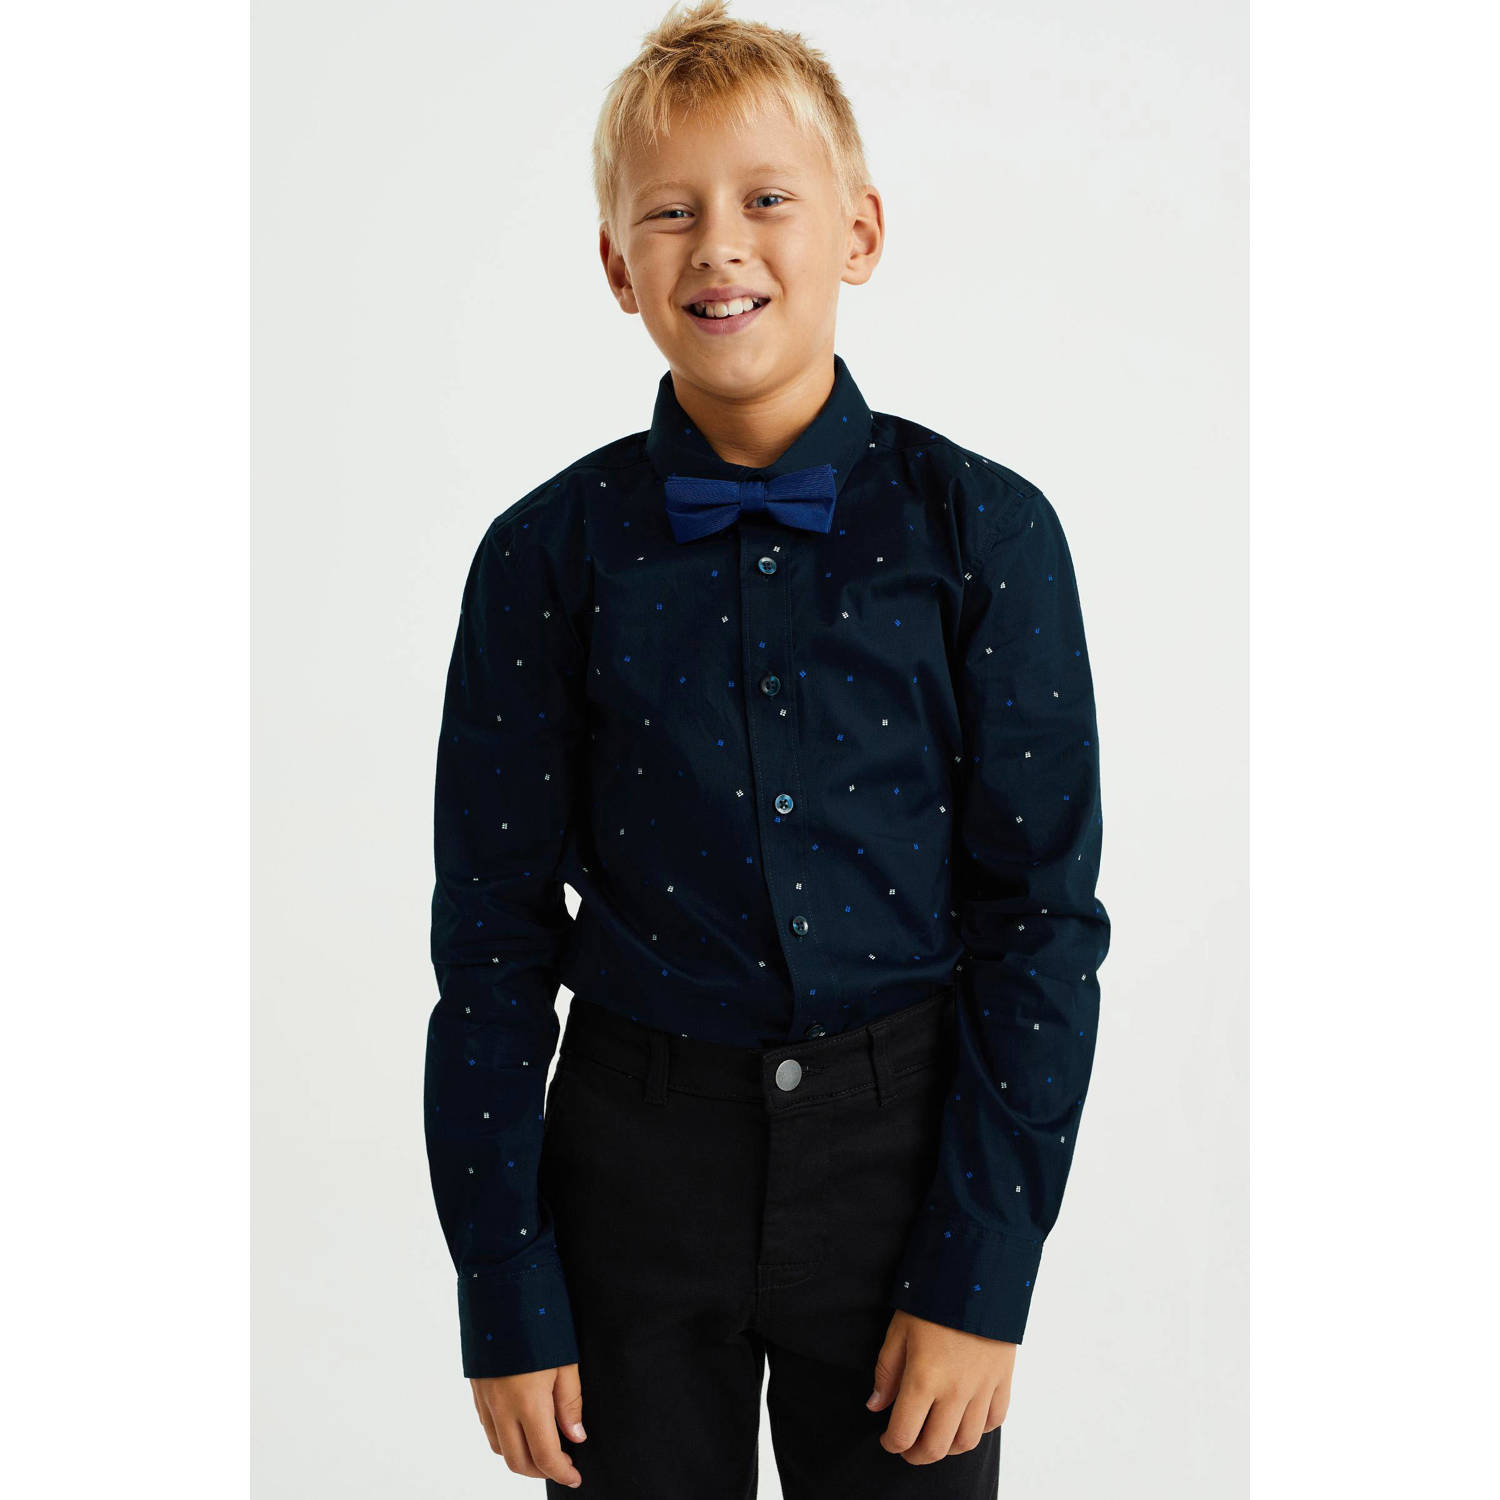 WE Fashion overhemd met vlinderstrik diep donkerblauw Jongens Stretchdenim Klassieke kraag 110 116